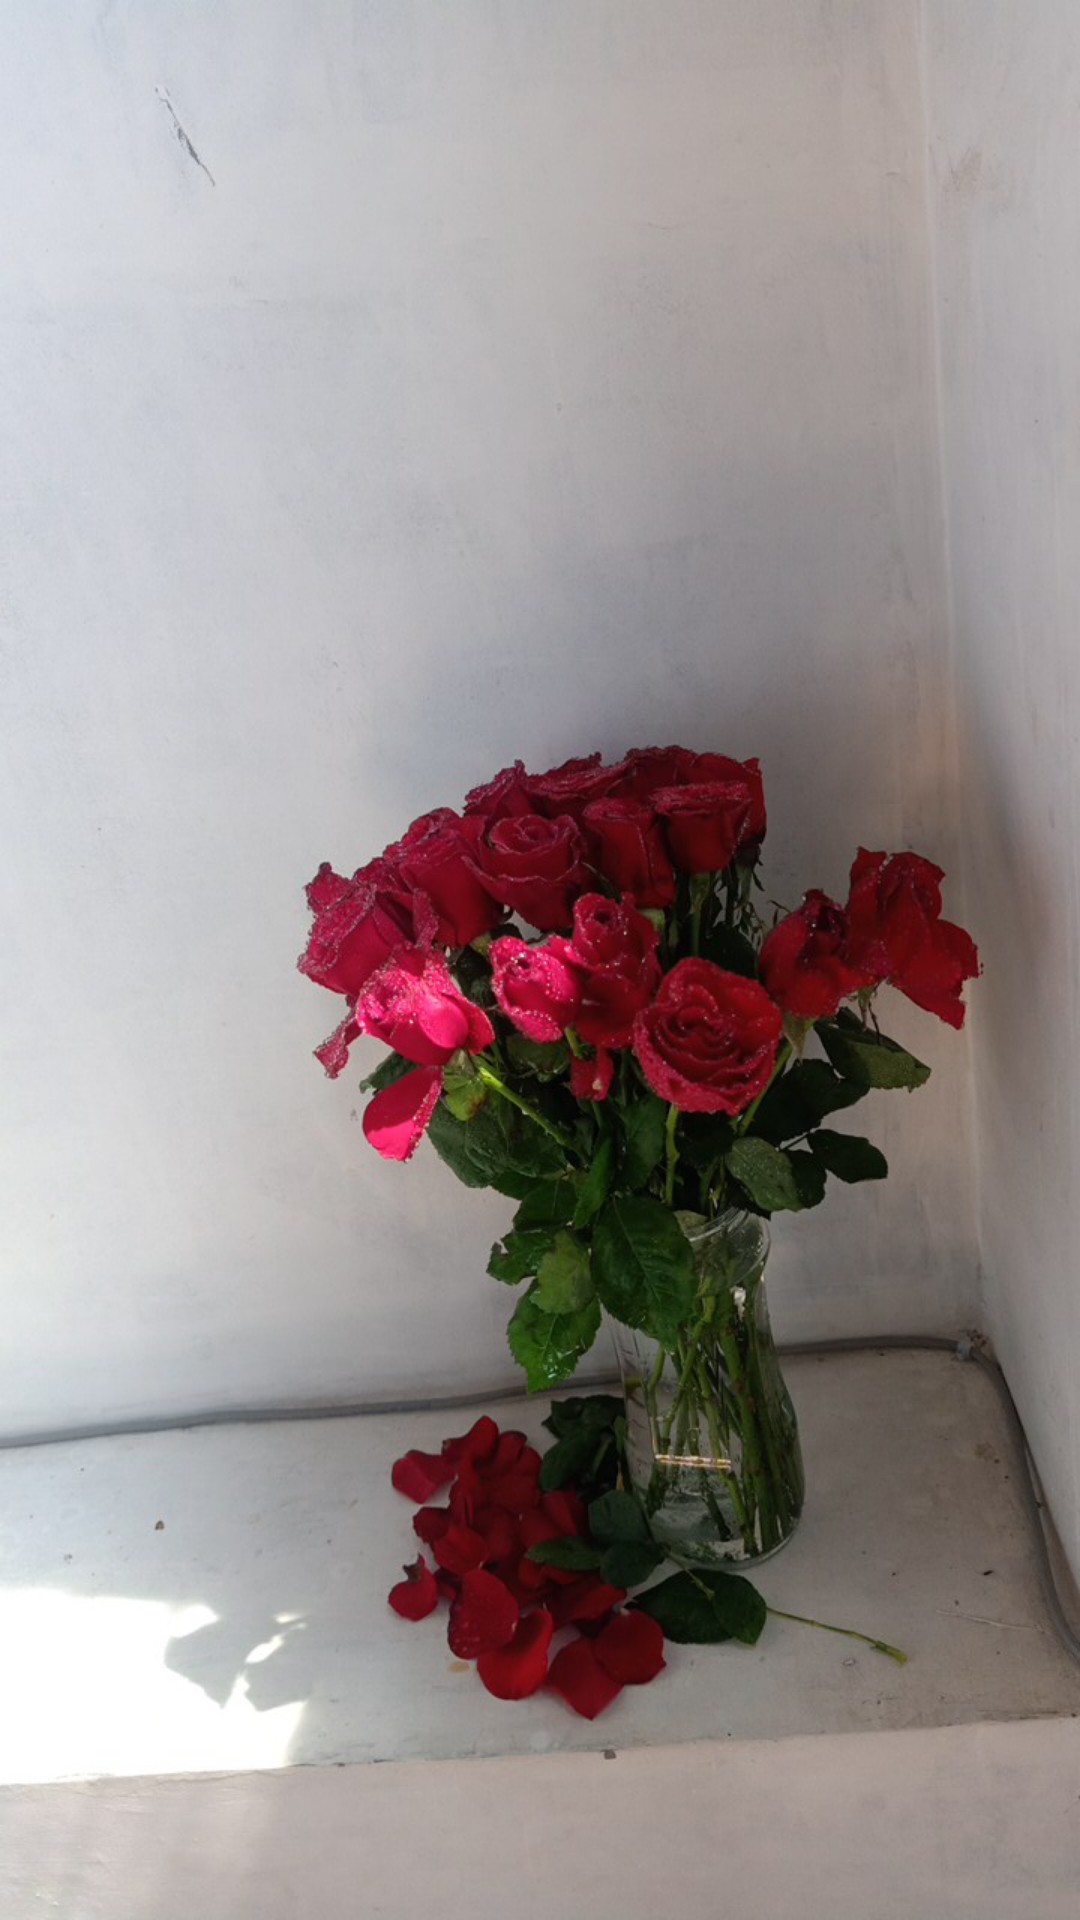 bunga mawar  merah  asli  segar 20 tangkai  Shopee Indonesia